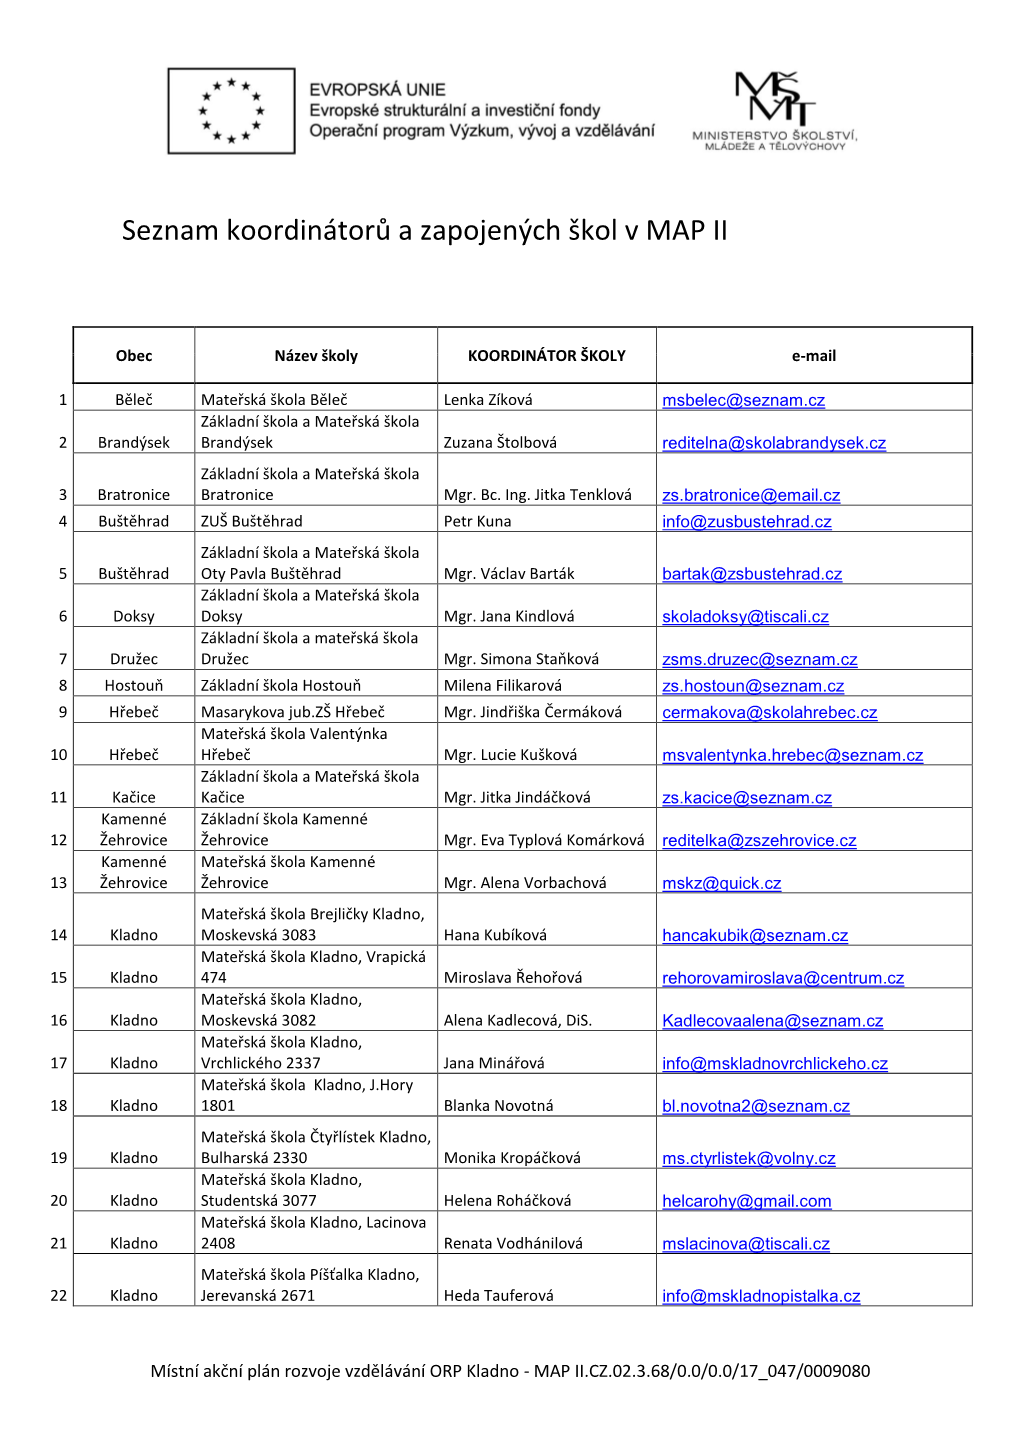 Seznam Koordinátorů a Zapojených Škol V MAP II